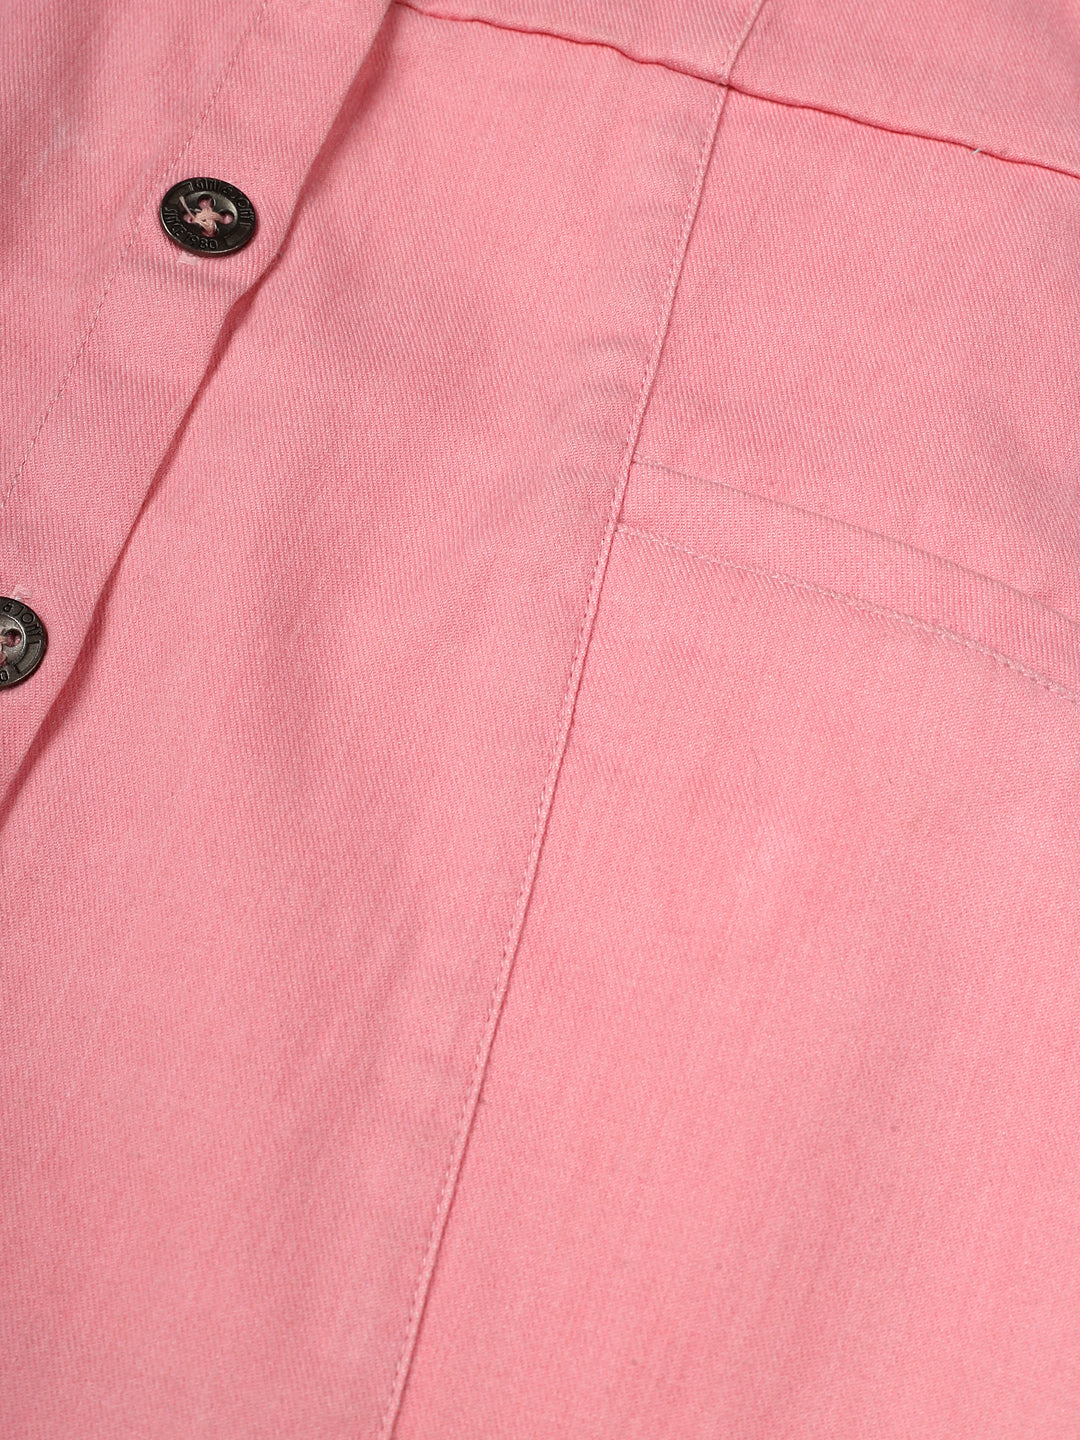 Girls Pink Cotton Denim Solid Dress